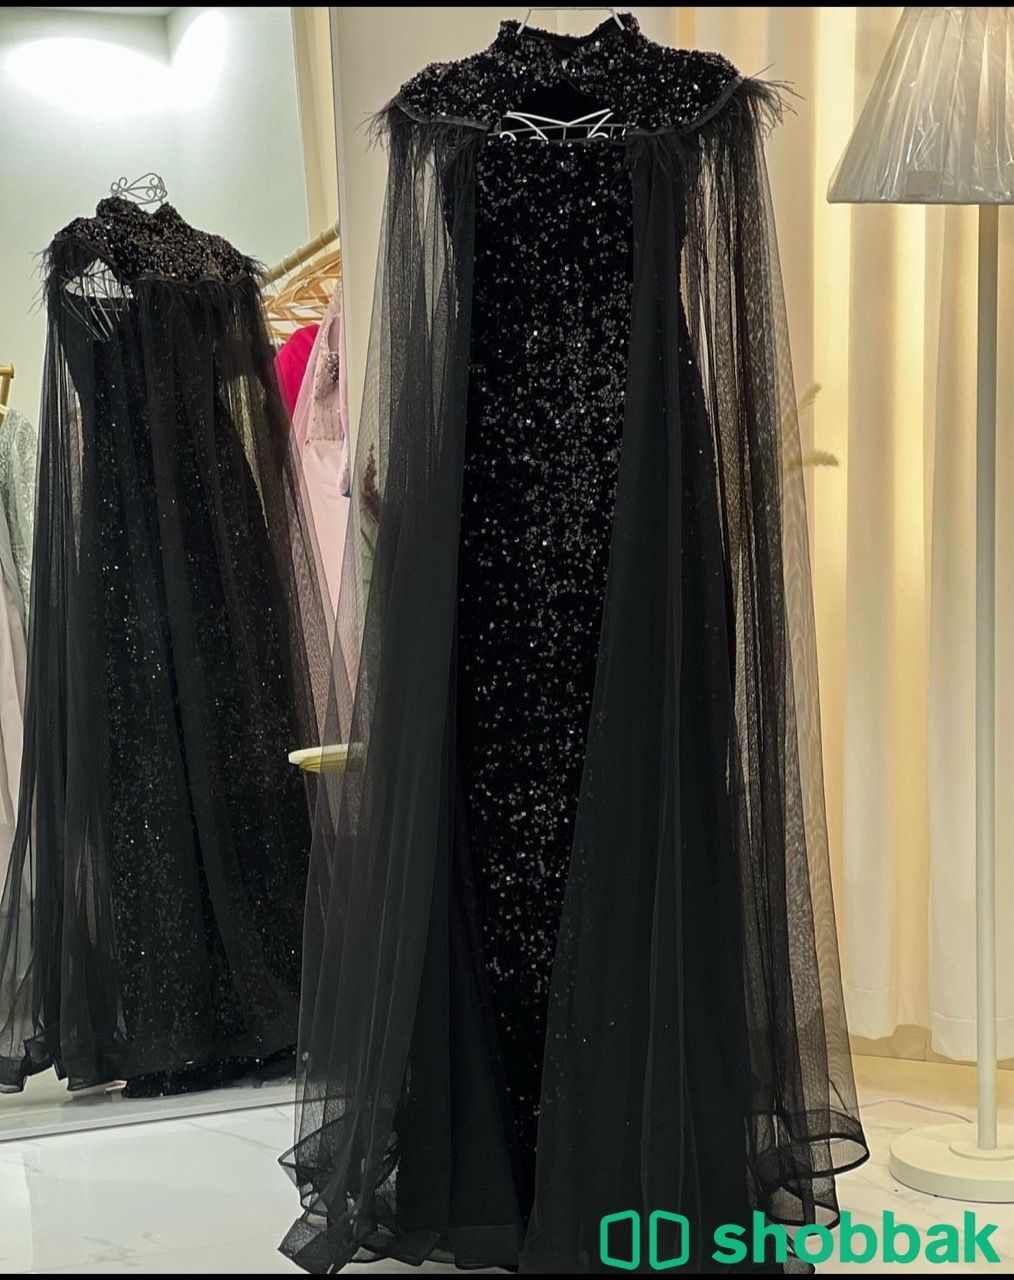 فستان فخخخخم  للبيع  Shobbak Saudi Arabia